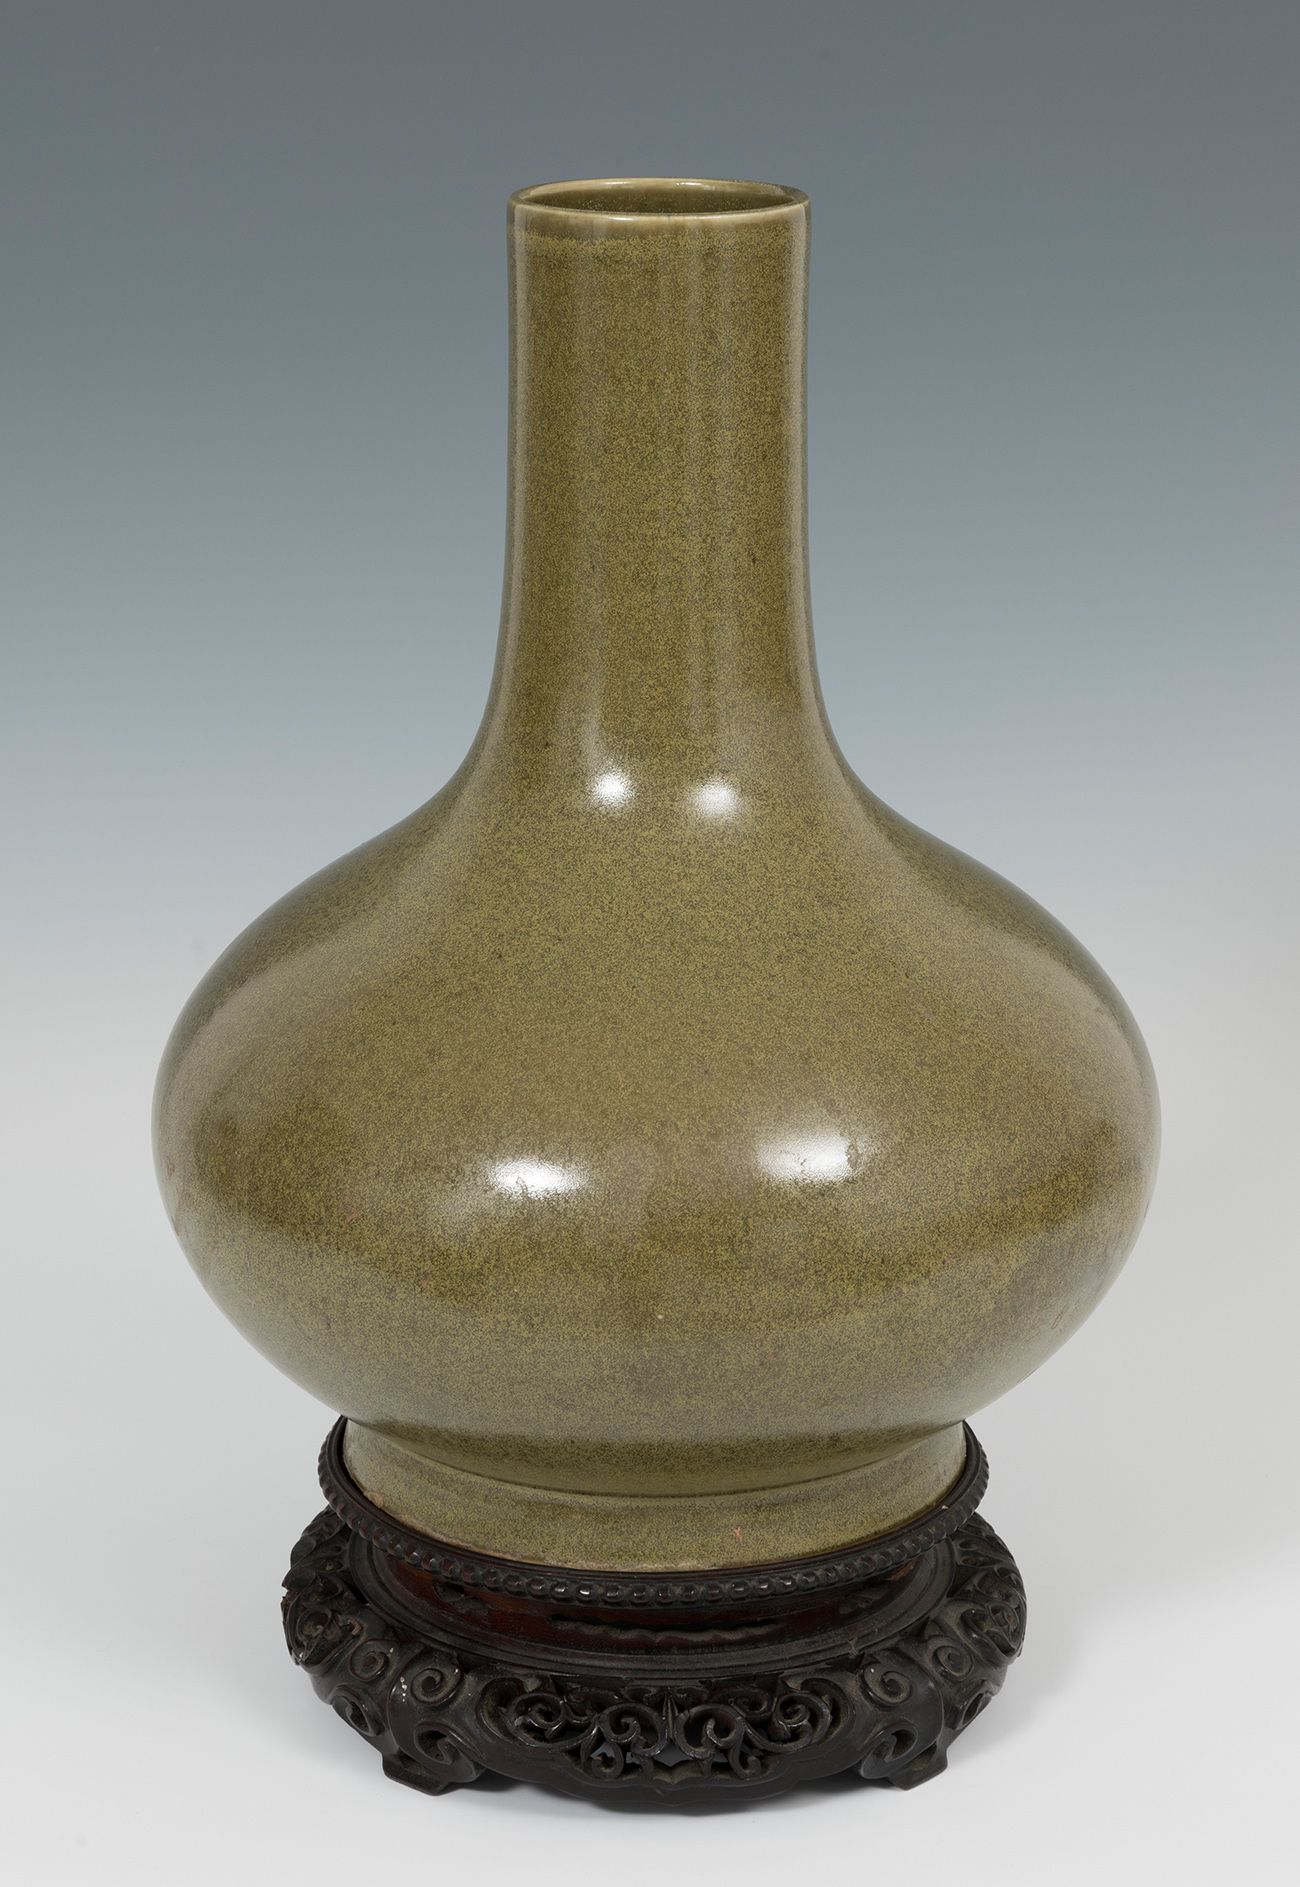 花瓶；中国，清朝，19世纪。 茶色瓷器。 它有提到光绪时期的标记